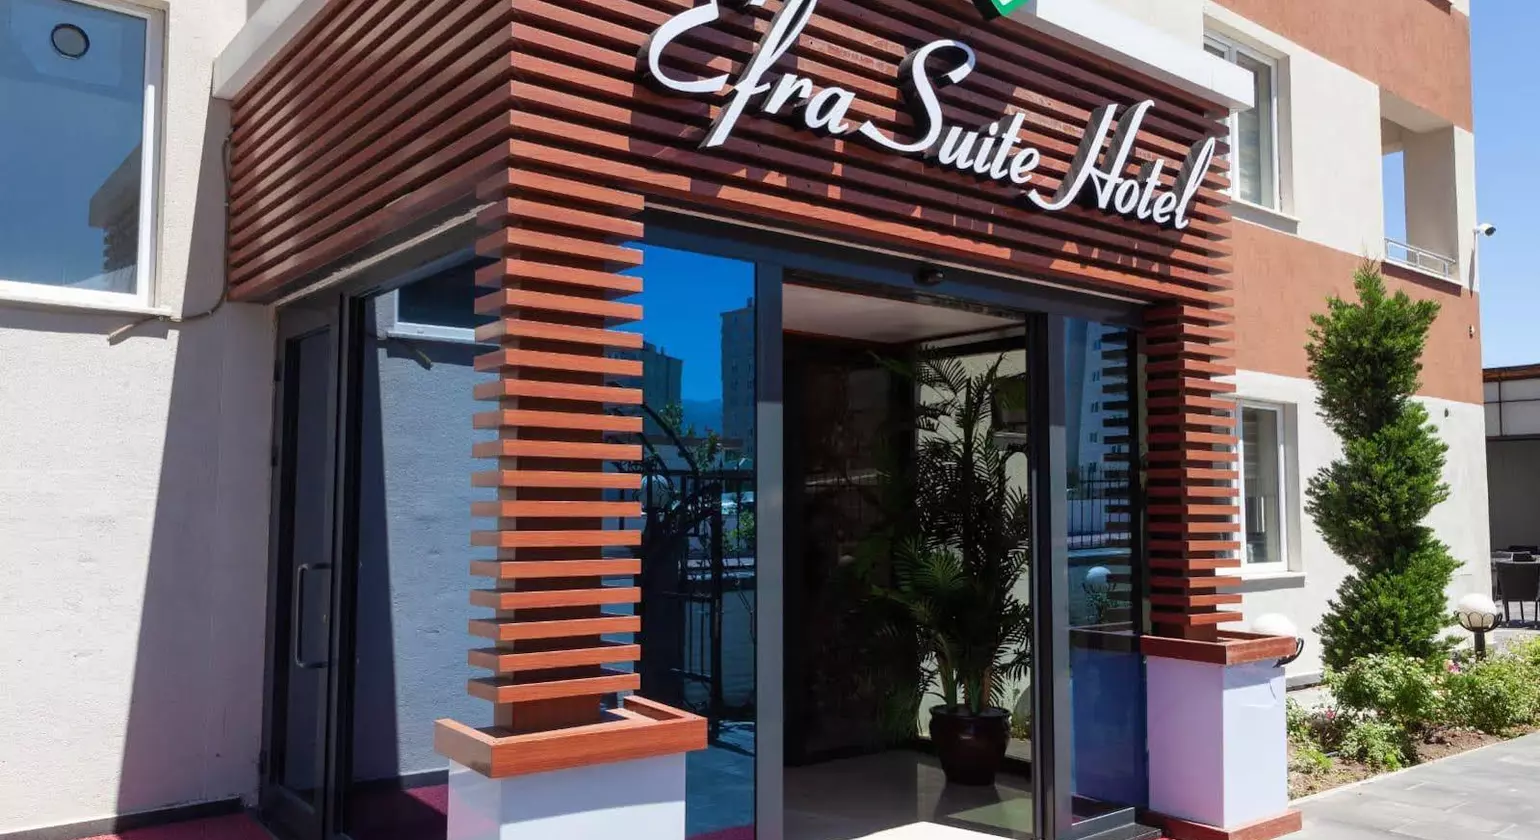 Efra Suite Hotel